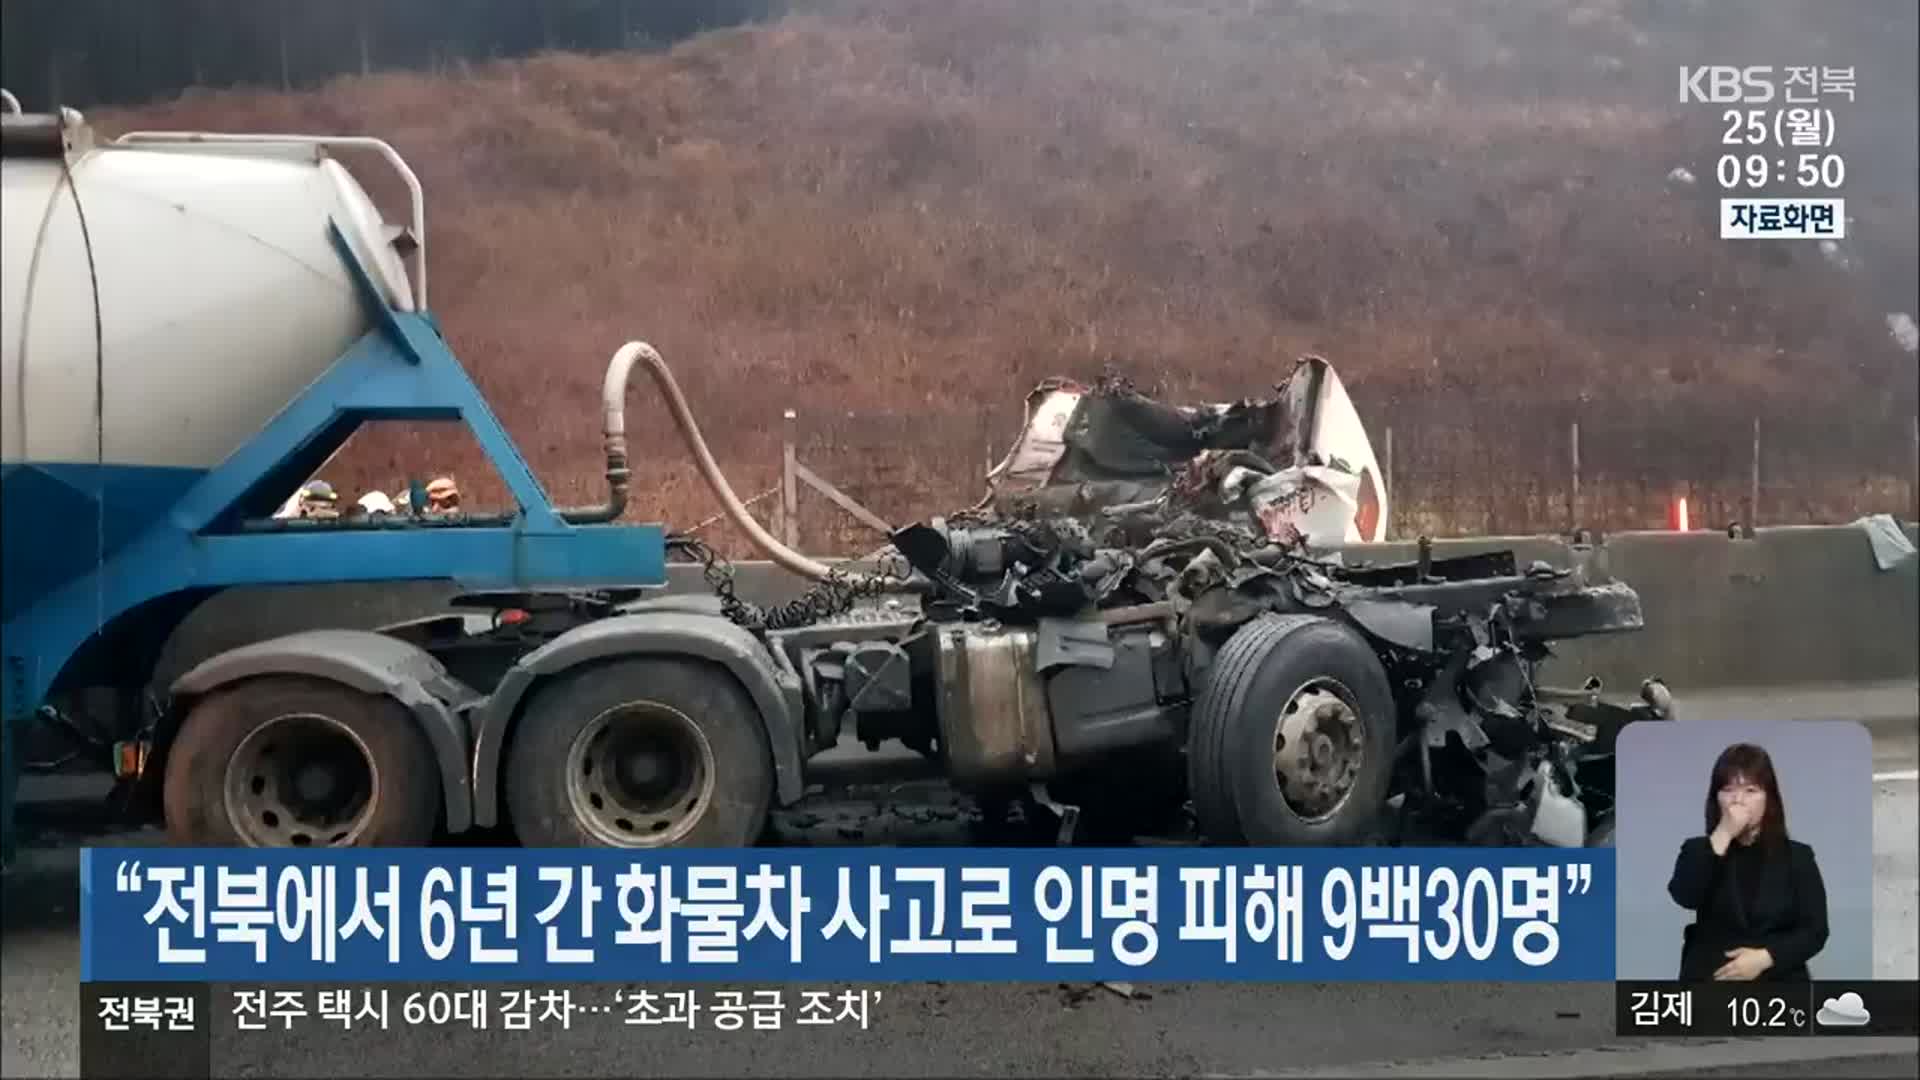 “전북에서 6년 간 화물차 사고로 인명 피해 930명”